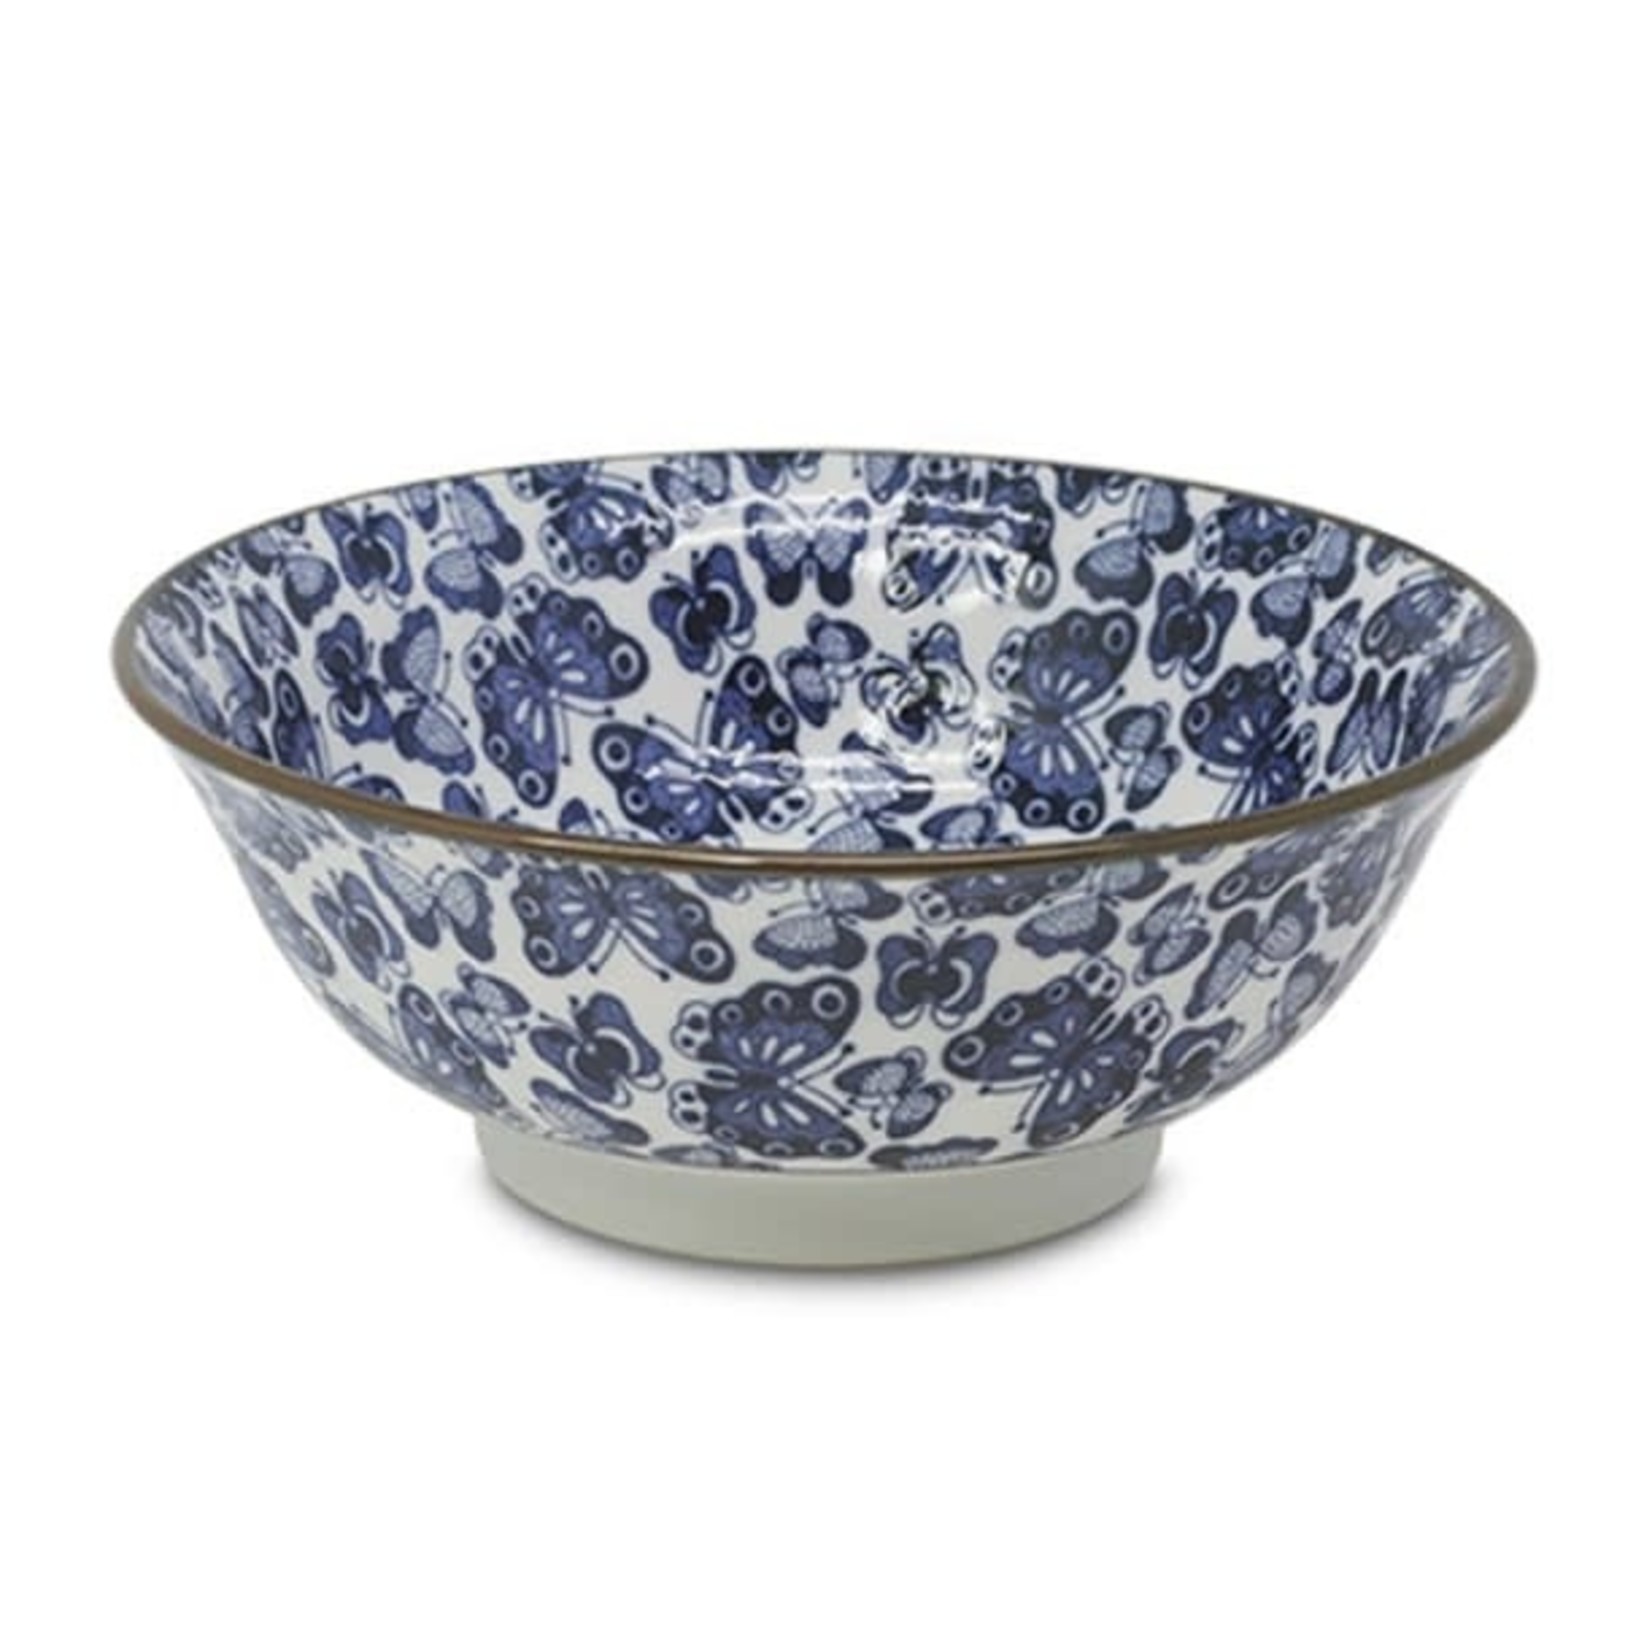 EMF EMF Japanese Porcelain Bowl 8" - Blue Butterfly